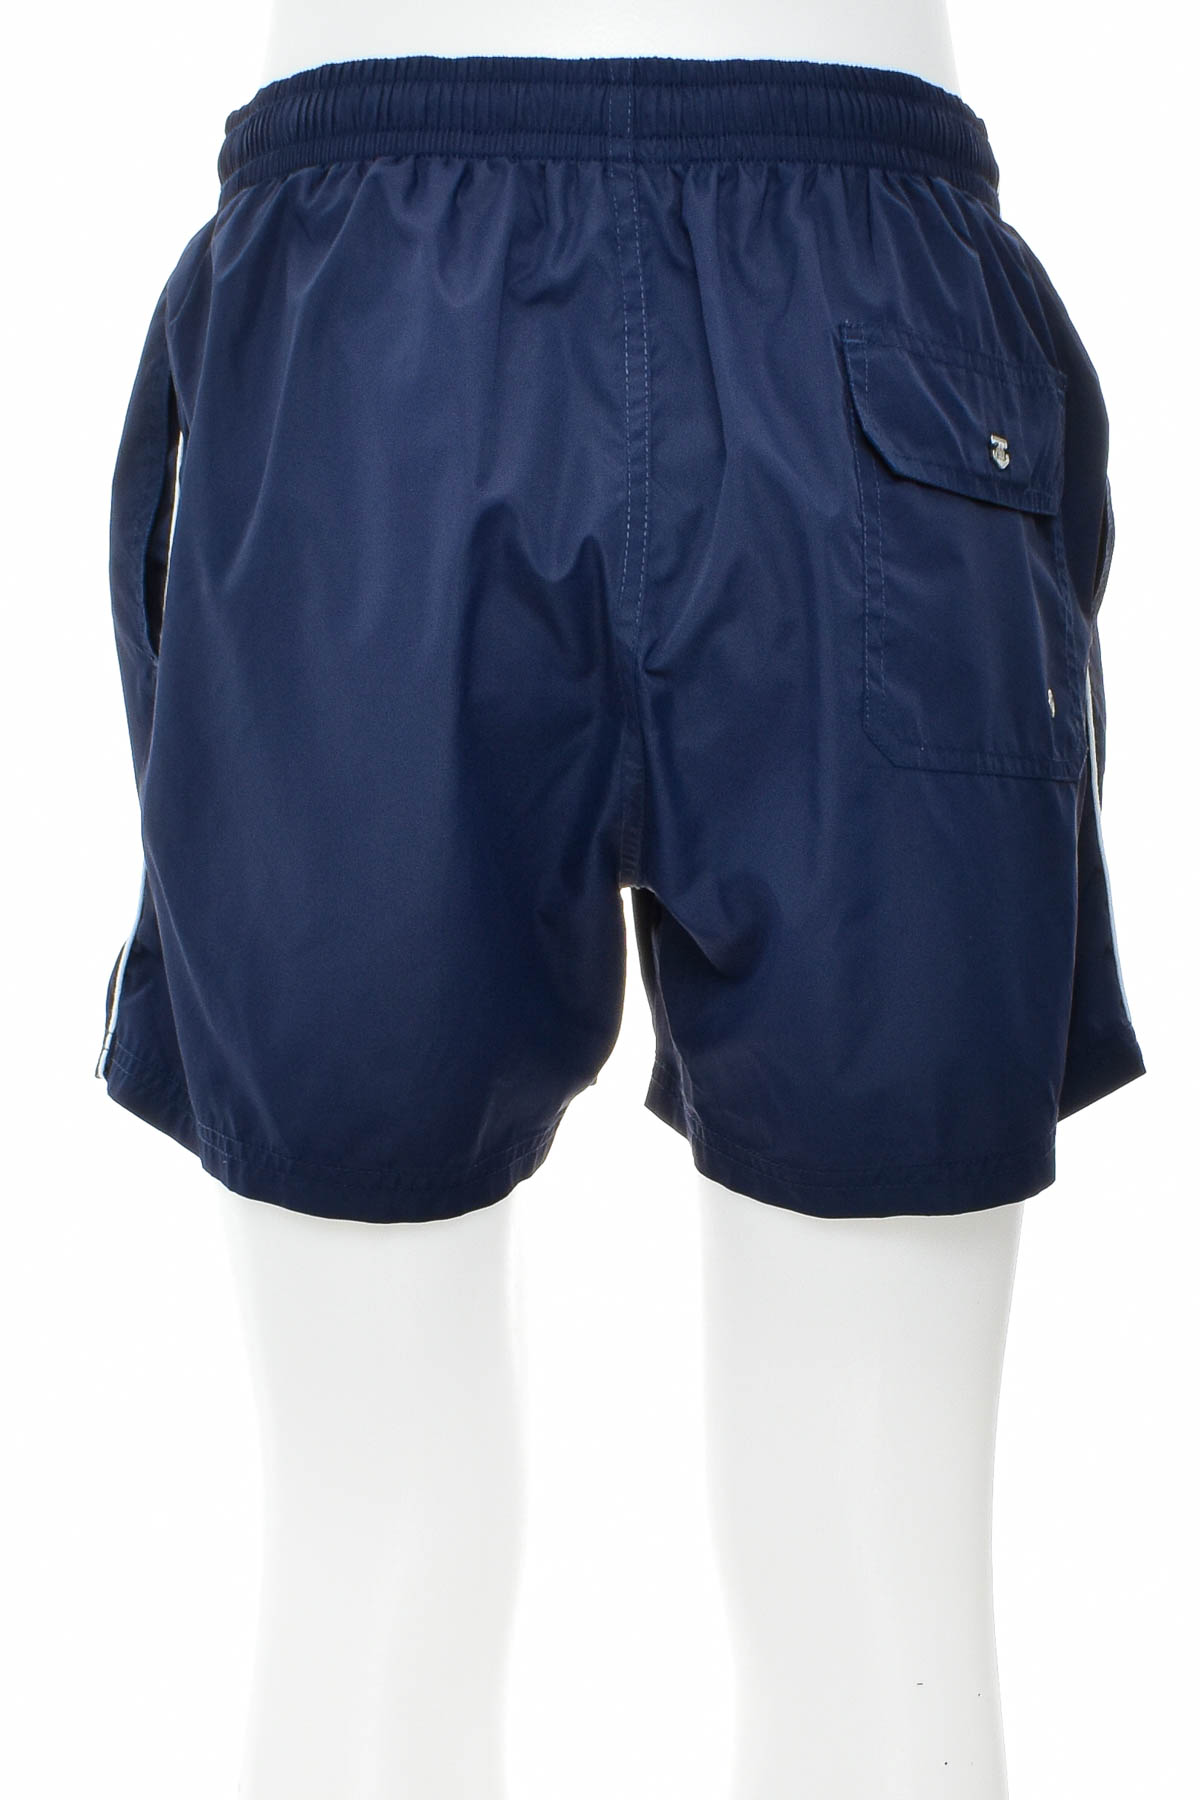 Men's shorts - Massimo Dutti - 1